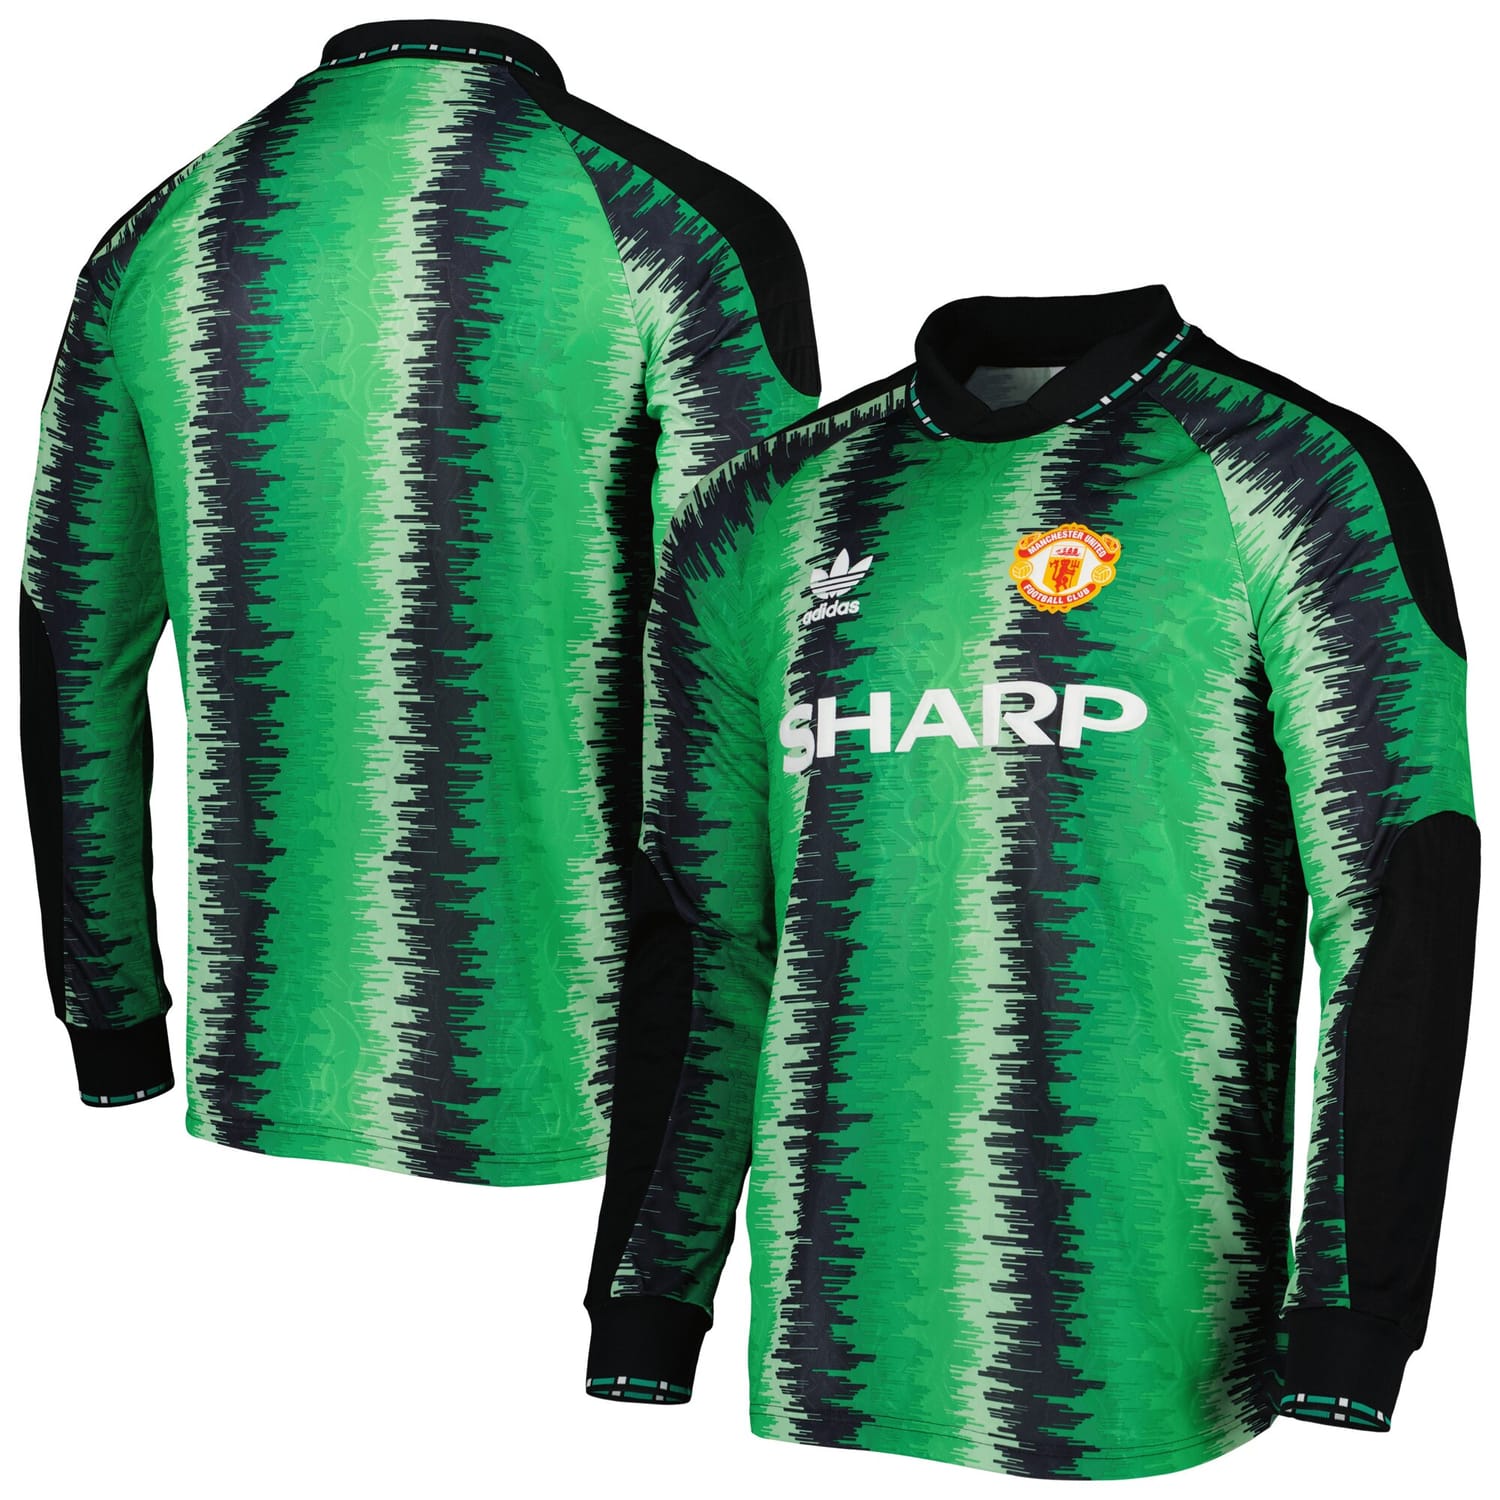 Premier League Manchester United Goalkeeper Jersey Shirt Green for Men